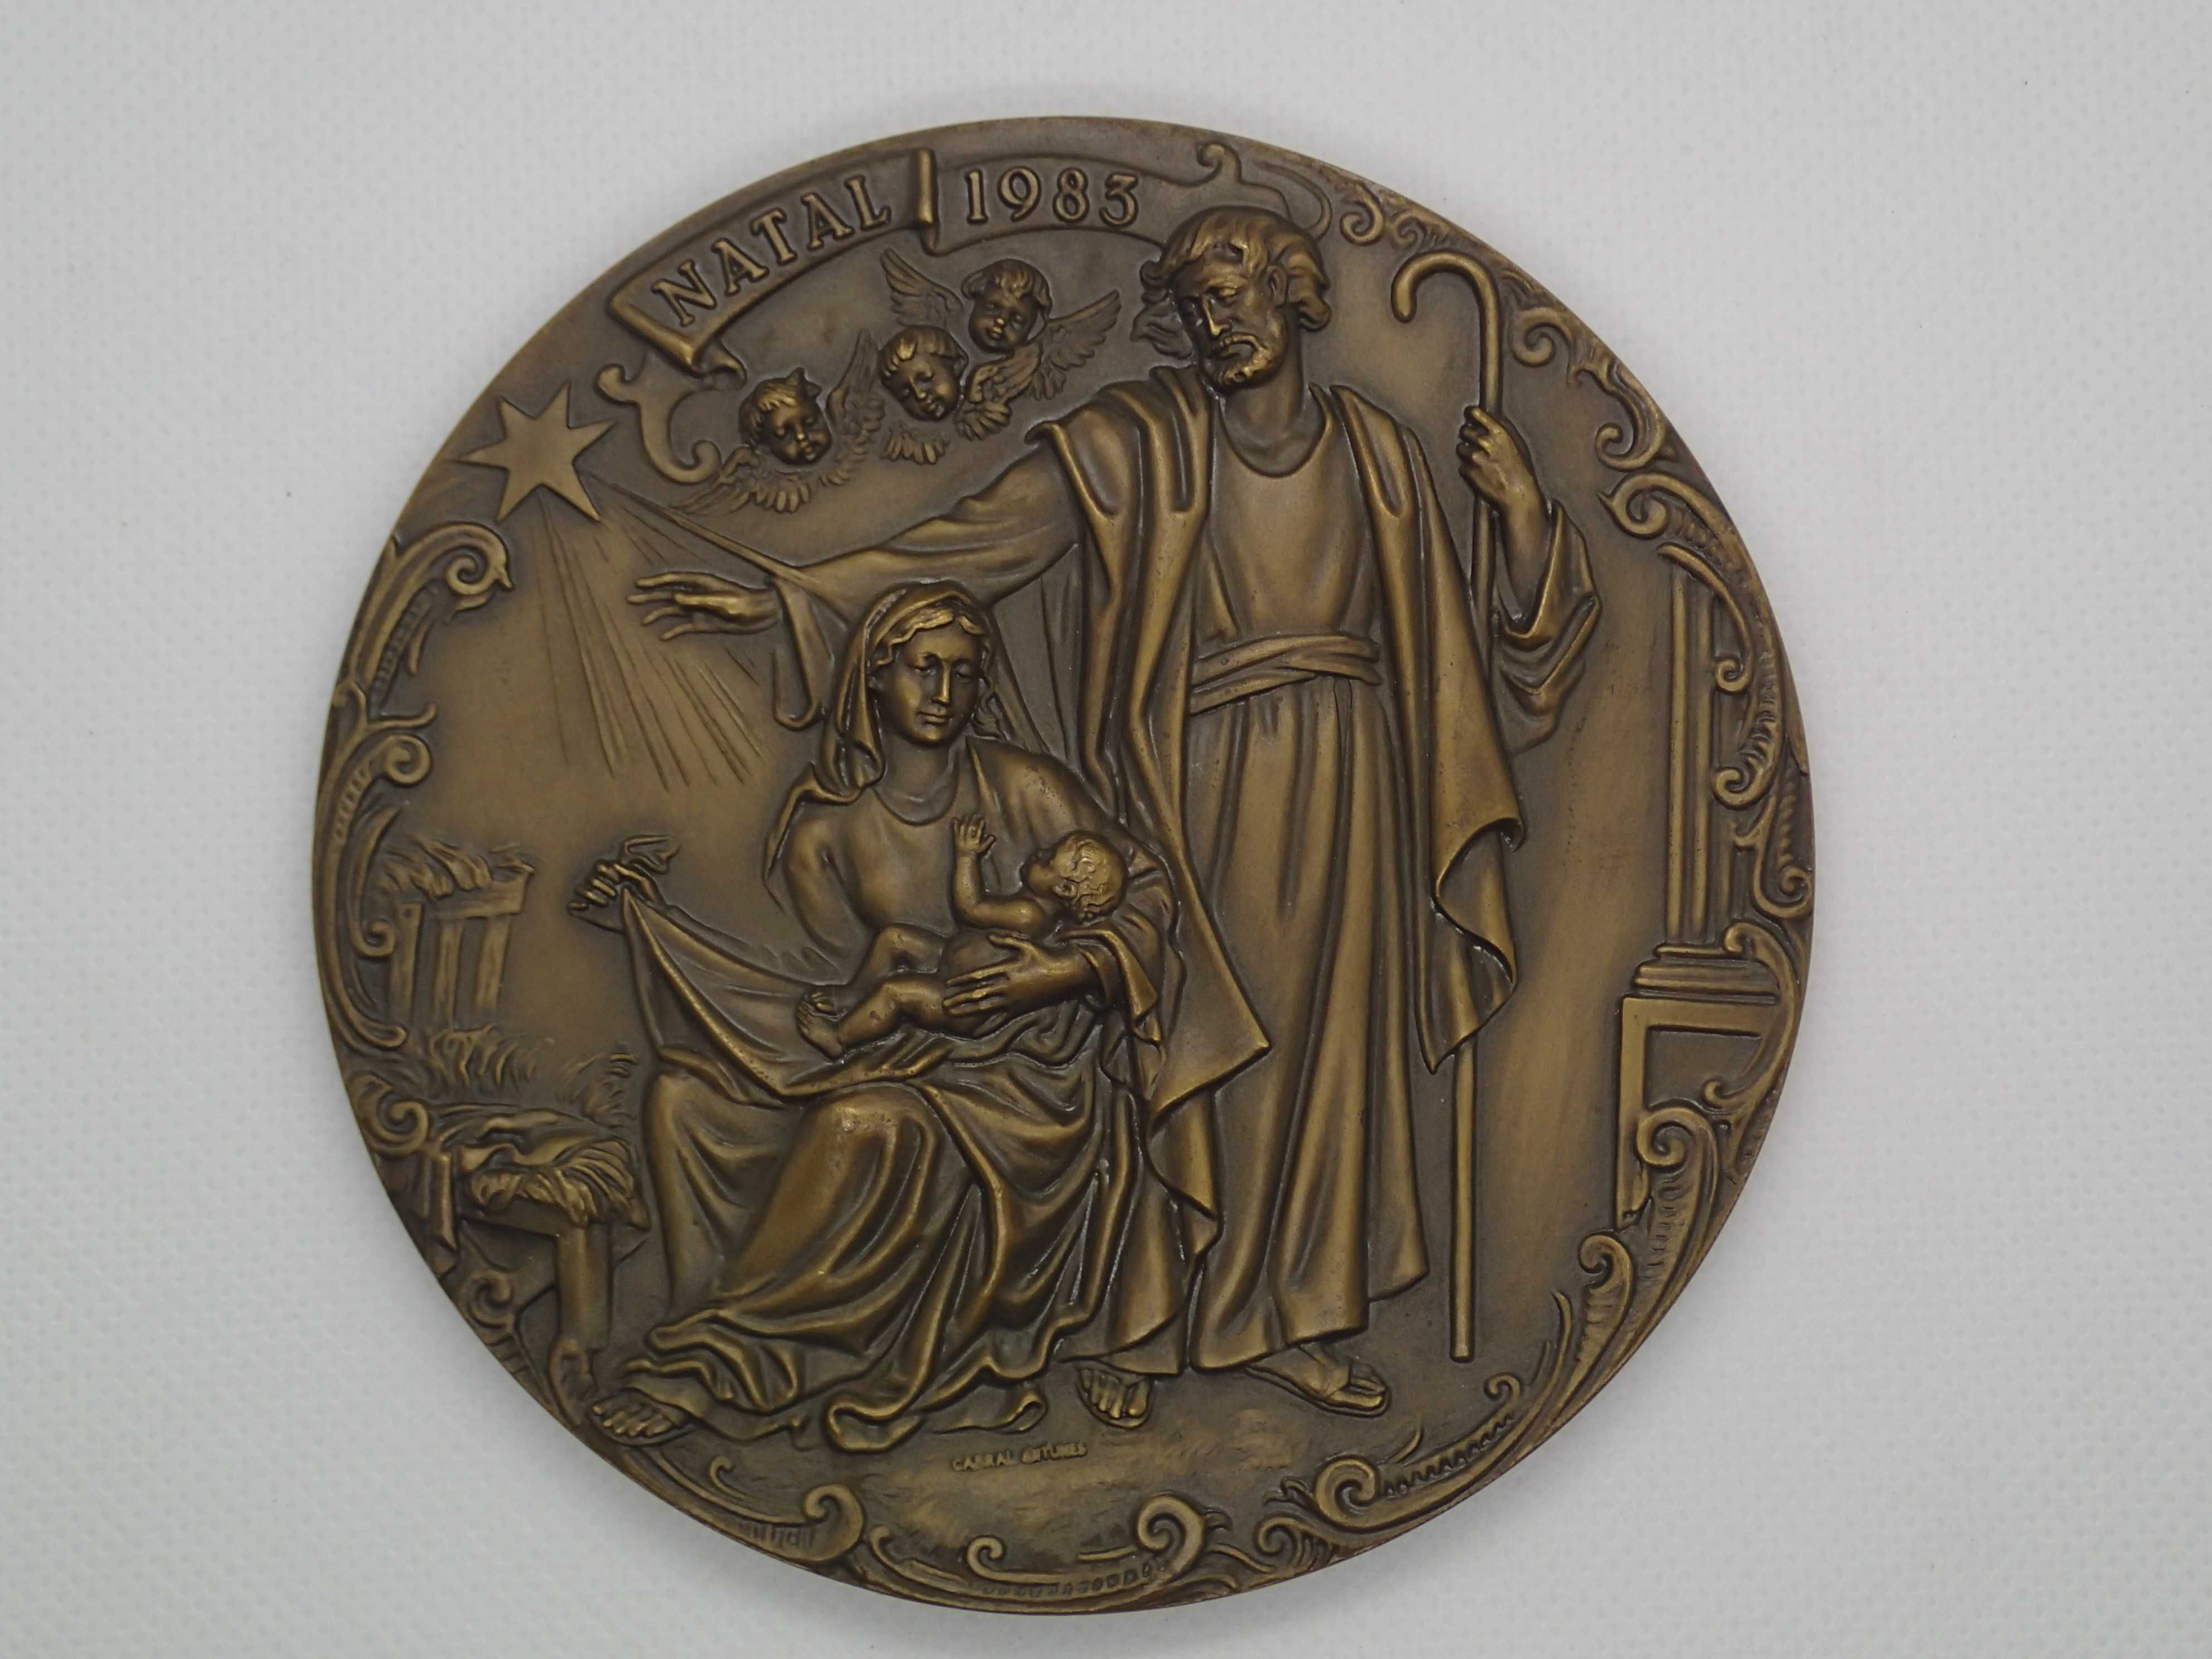 Medalha em bronze Natal de 1983